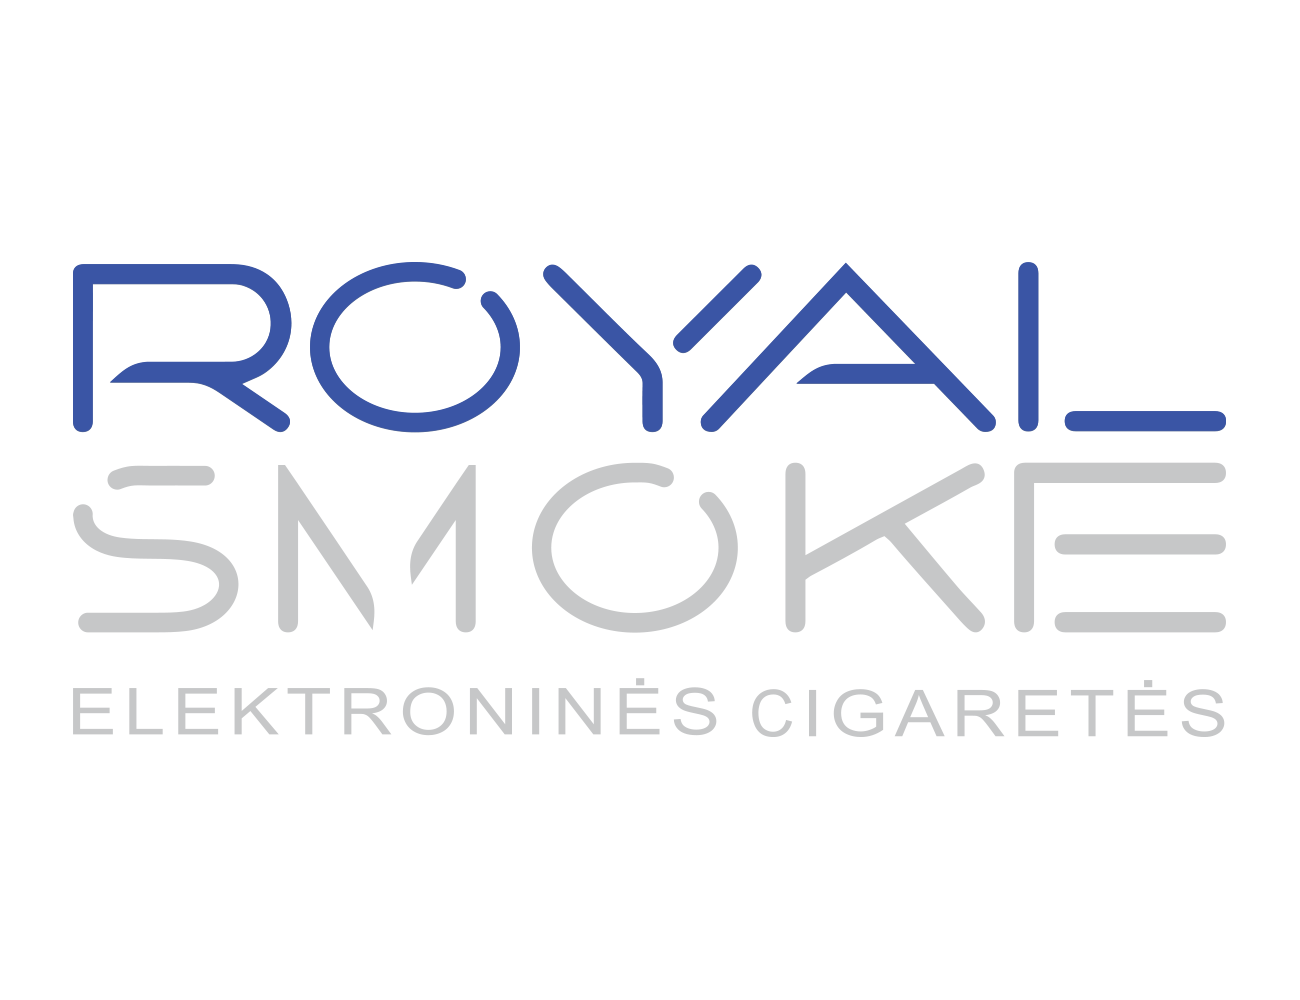 Royal Smoke